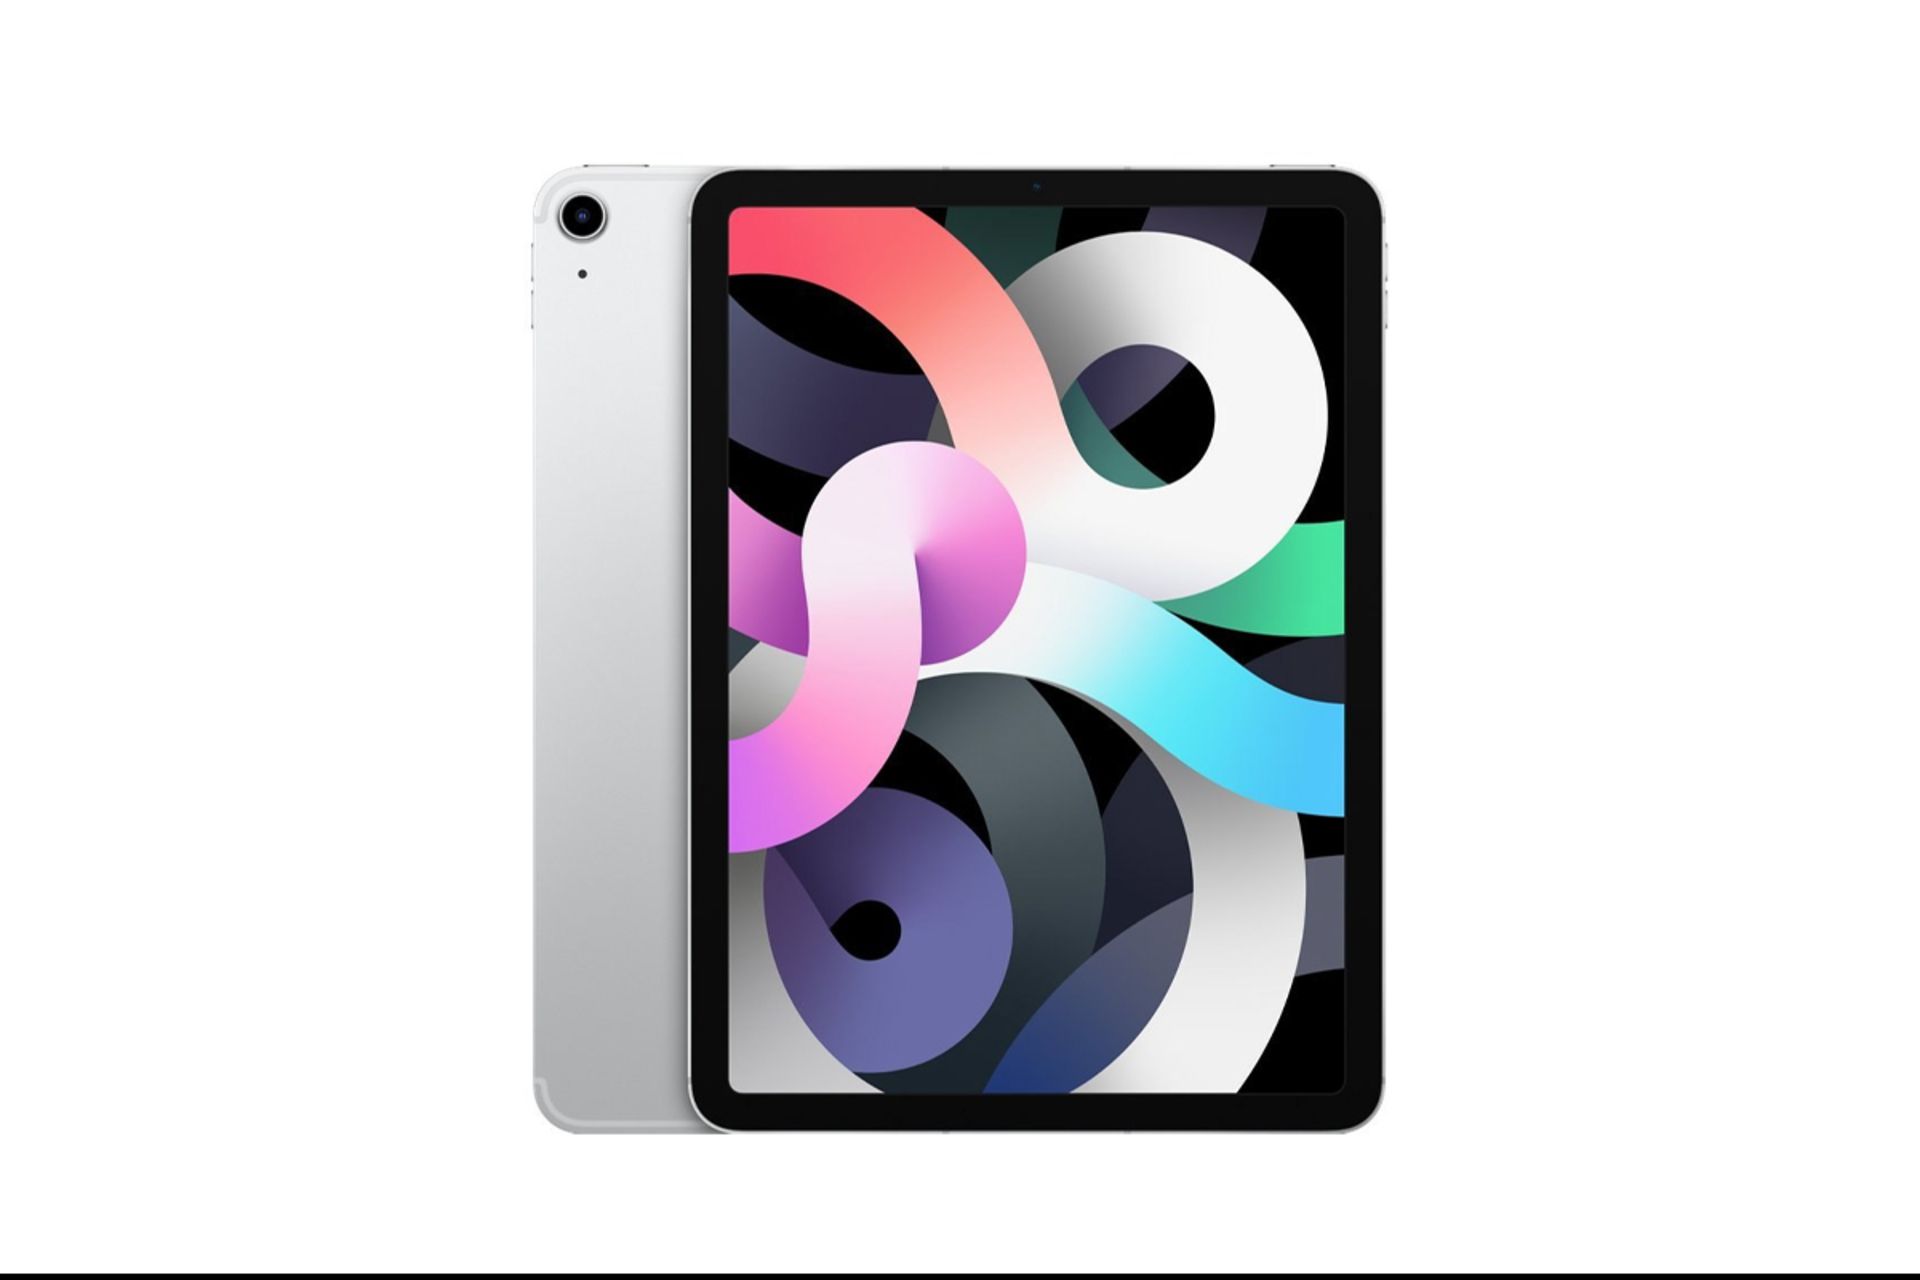 مرجع متخصصين ايران پنل جلو و پشت آيپد اير 2020 / Apple iPad Air 2020